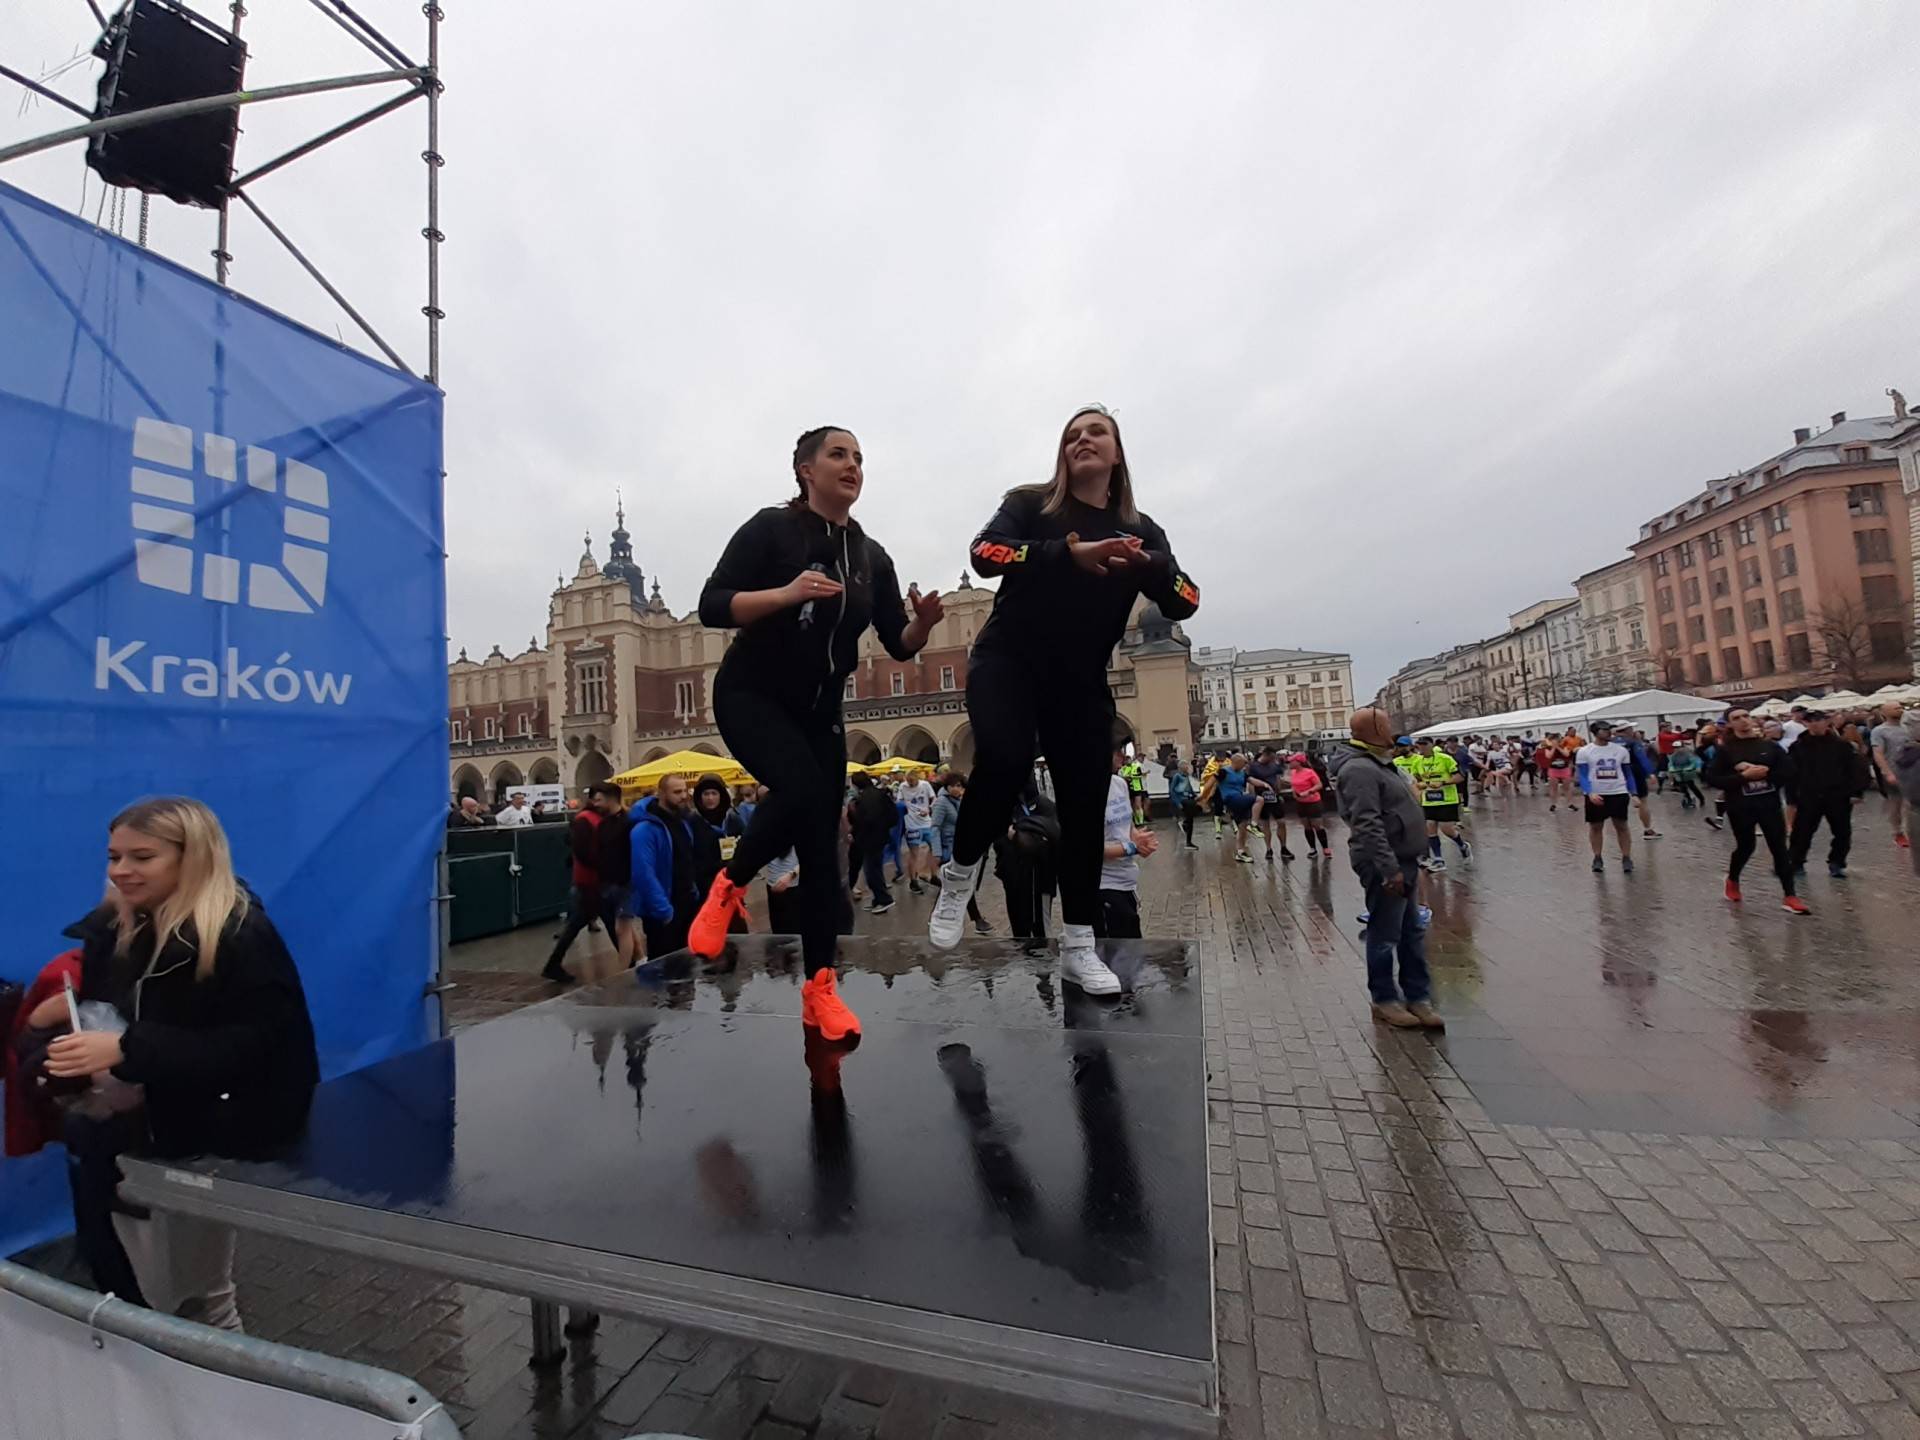 Rozgrzewka przed startem maratonu była niezbędna. Kraków biega